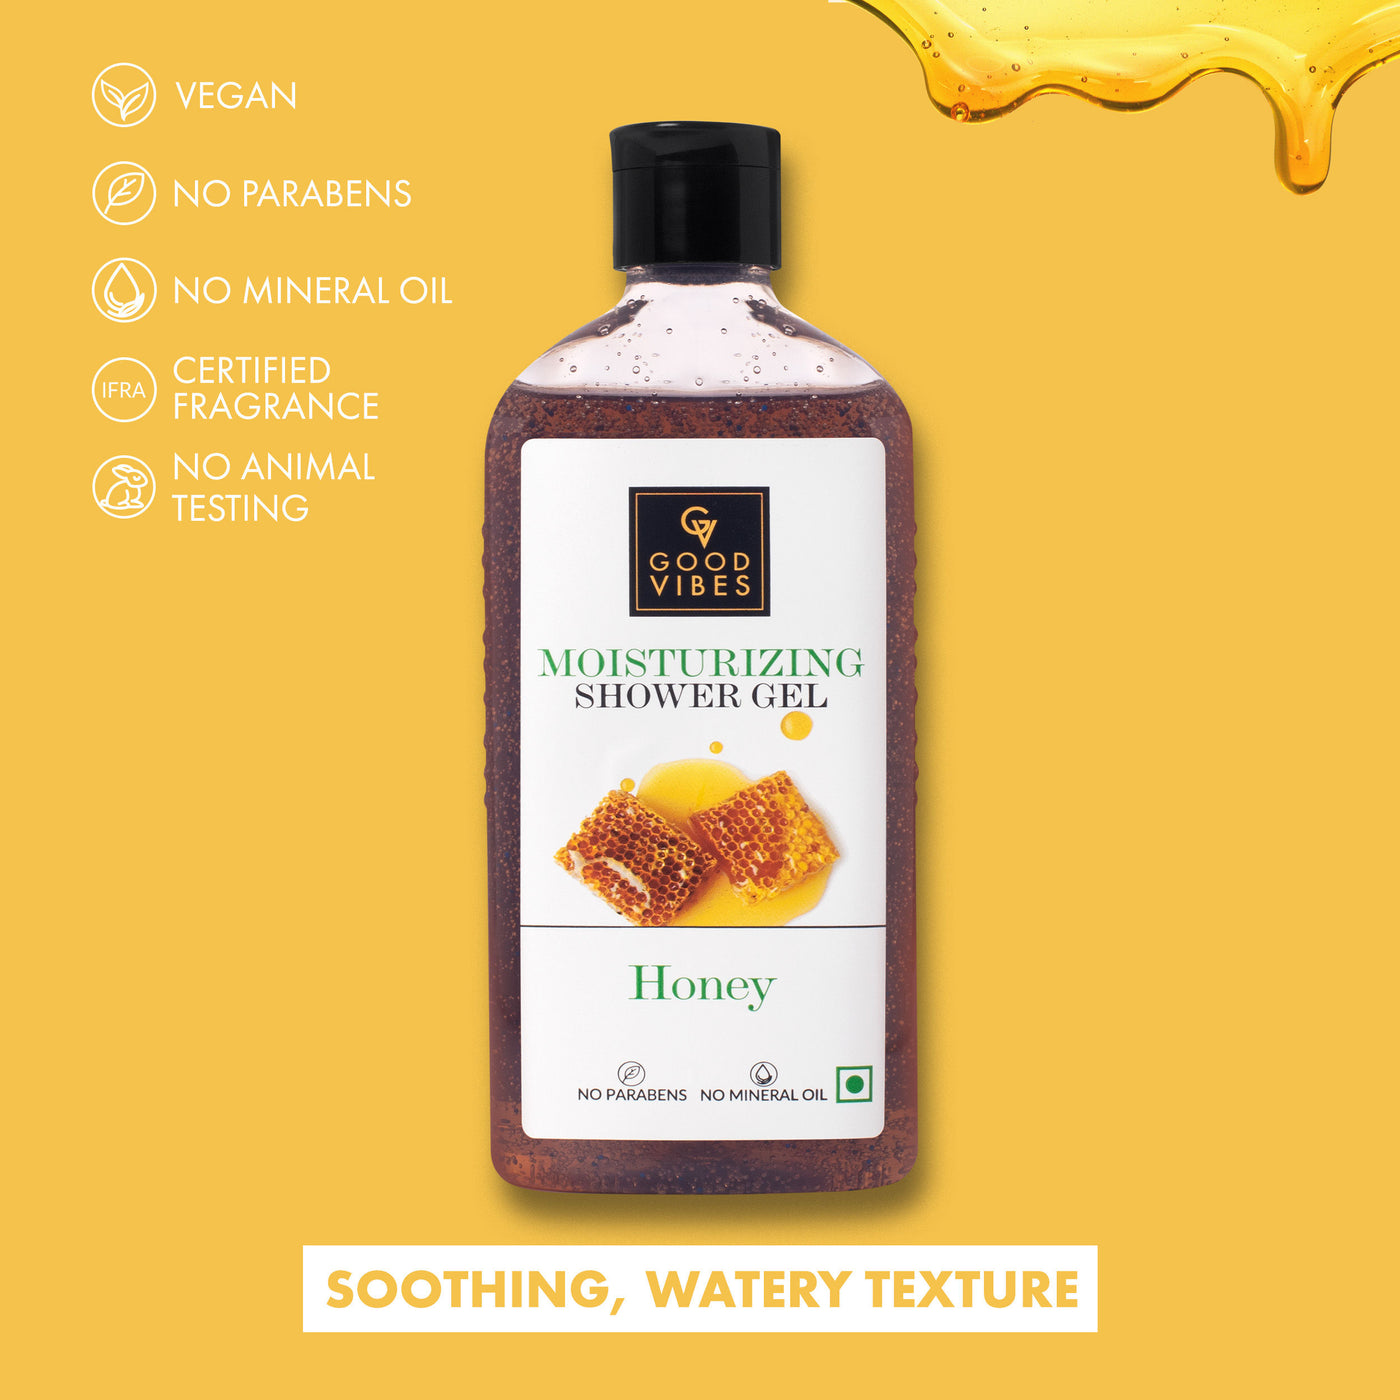 good-vibes-moisturizing-shower-gel-honey-300-ml-4